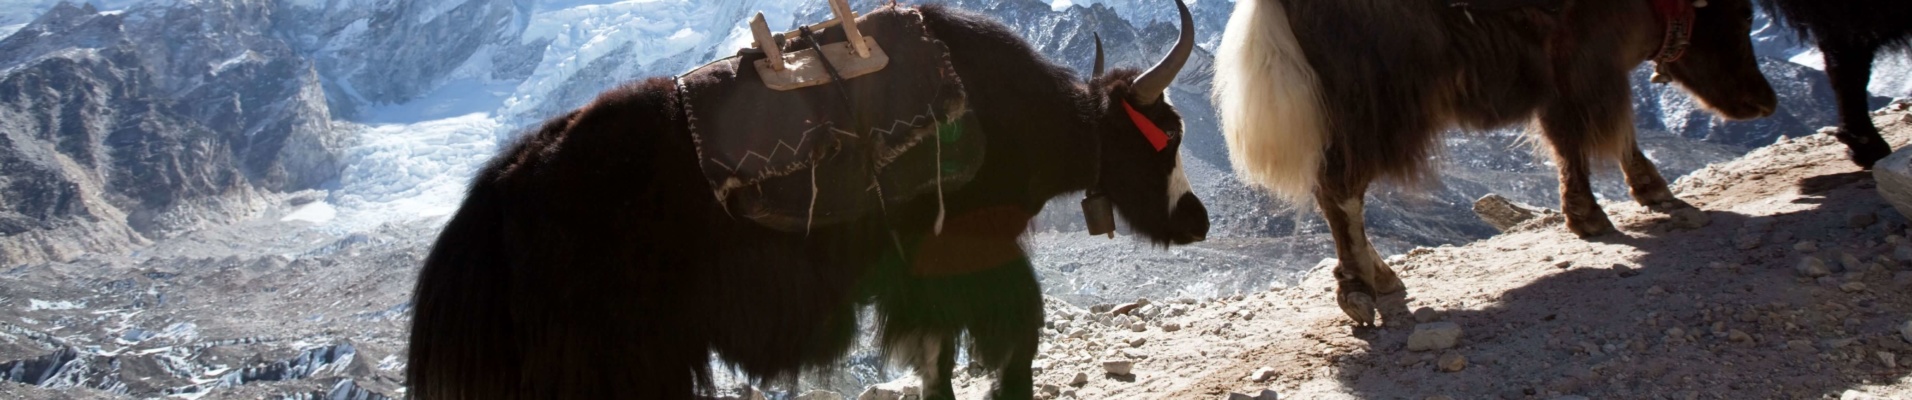 Caravanes de yaks, Népal